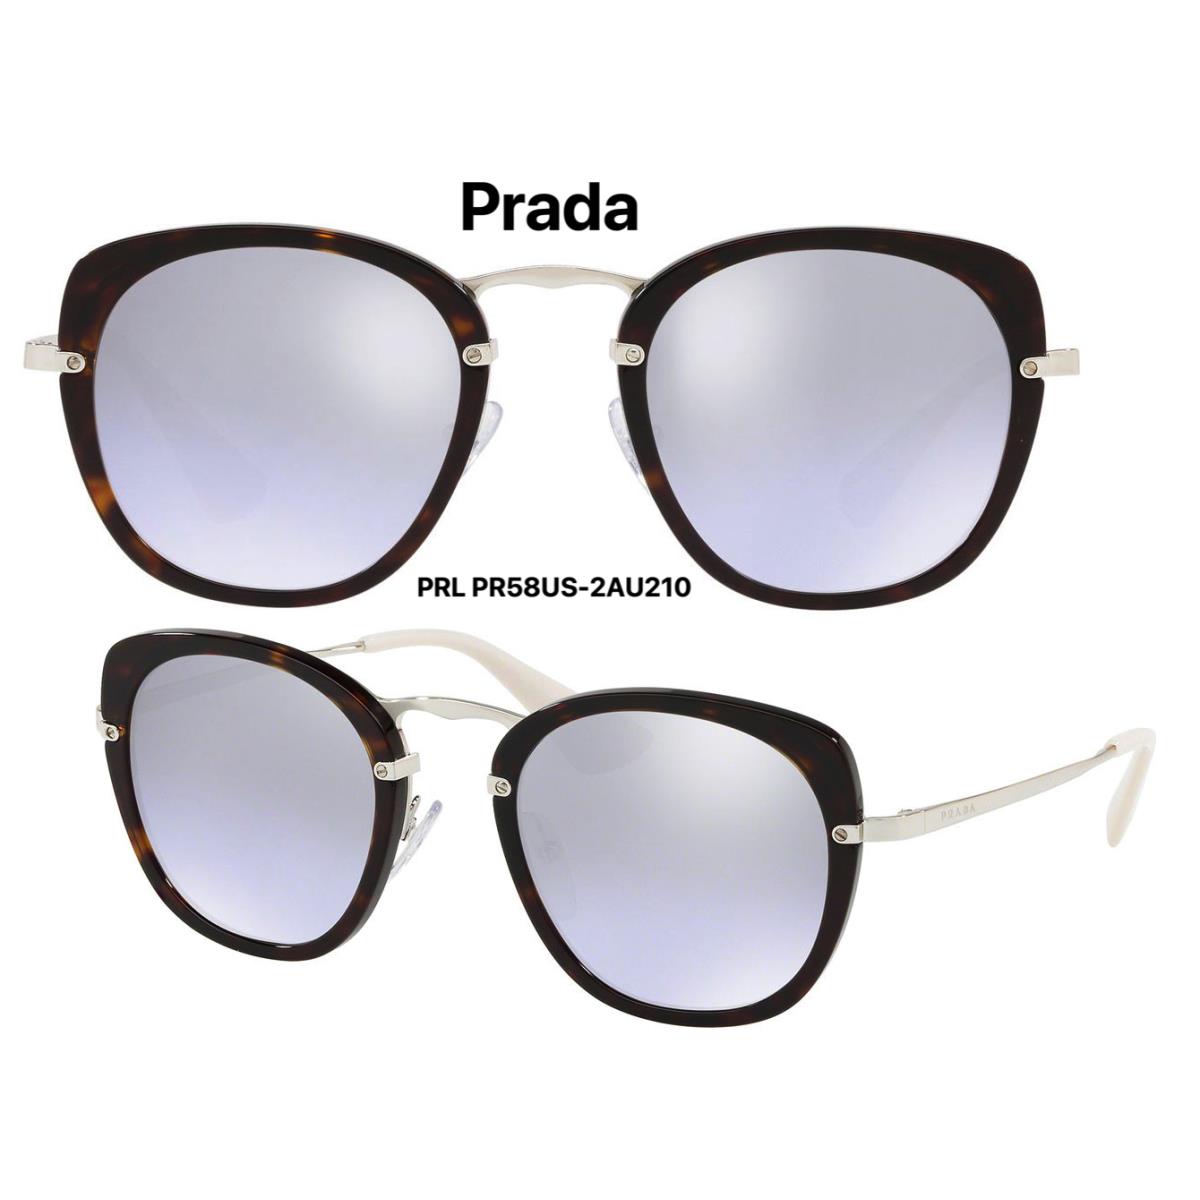 Prada PR58US 2AU210 Sunglasses Dark Havana Size 49mm